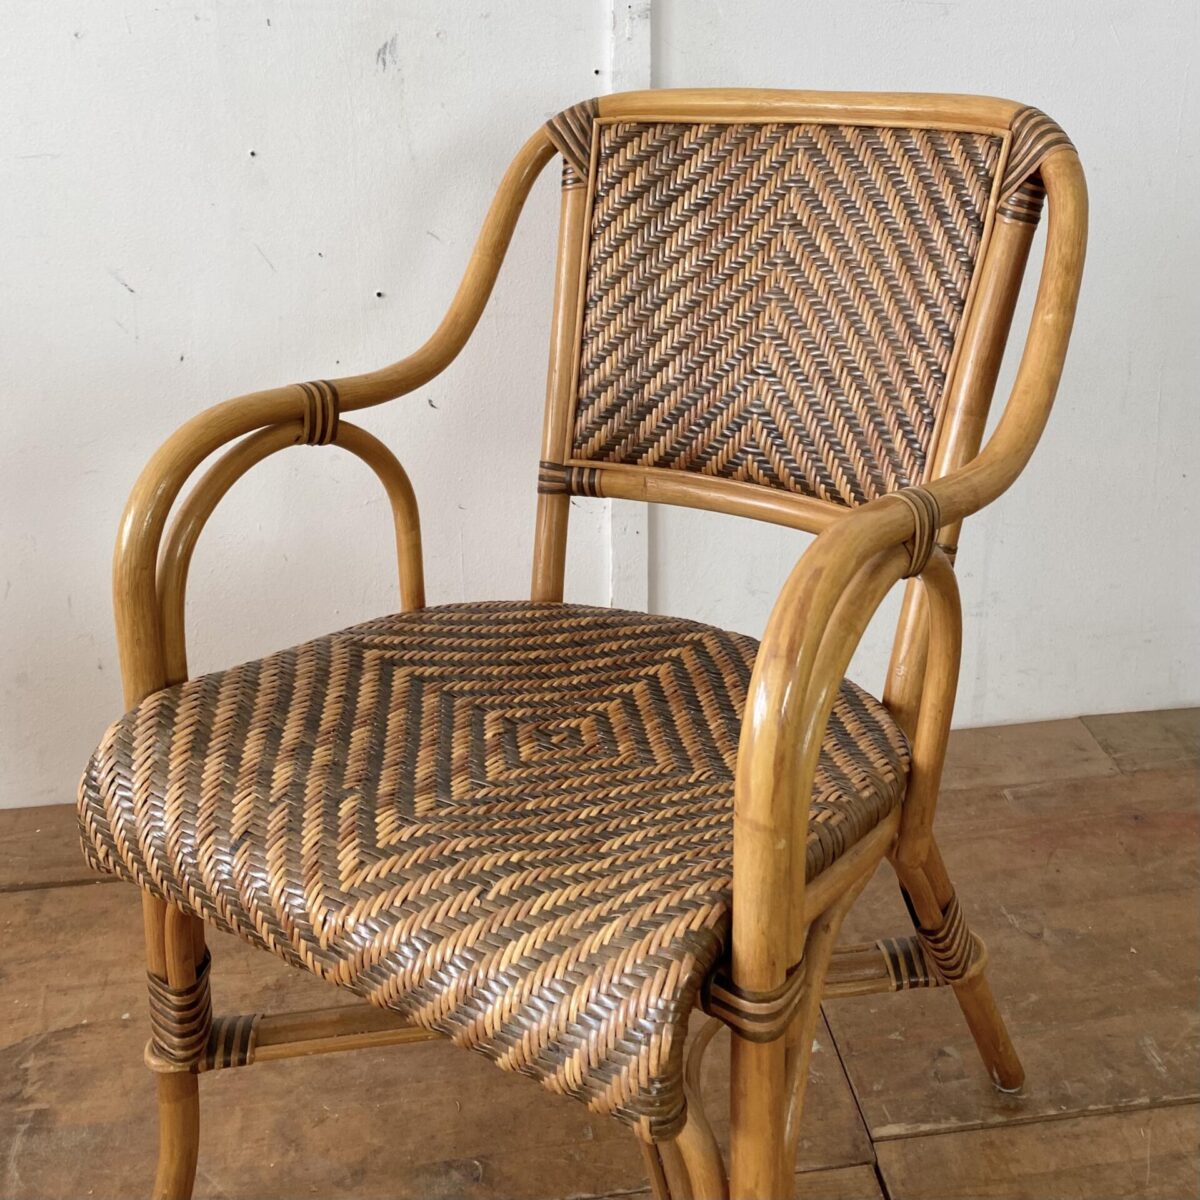 Deuxieme.shop rattan Sessel. Bambus Armlehnstühle. Sitzhöhe ca. 45cm. Preis fürs Set. Die Stühle sind in gutem Vintage Zustand mit kleineren Gebrauchsspuren. 